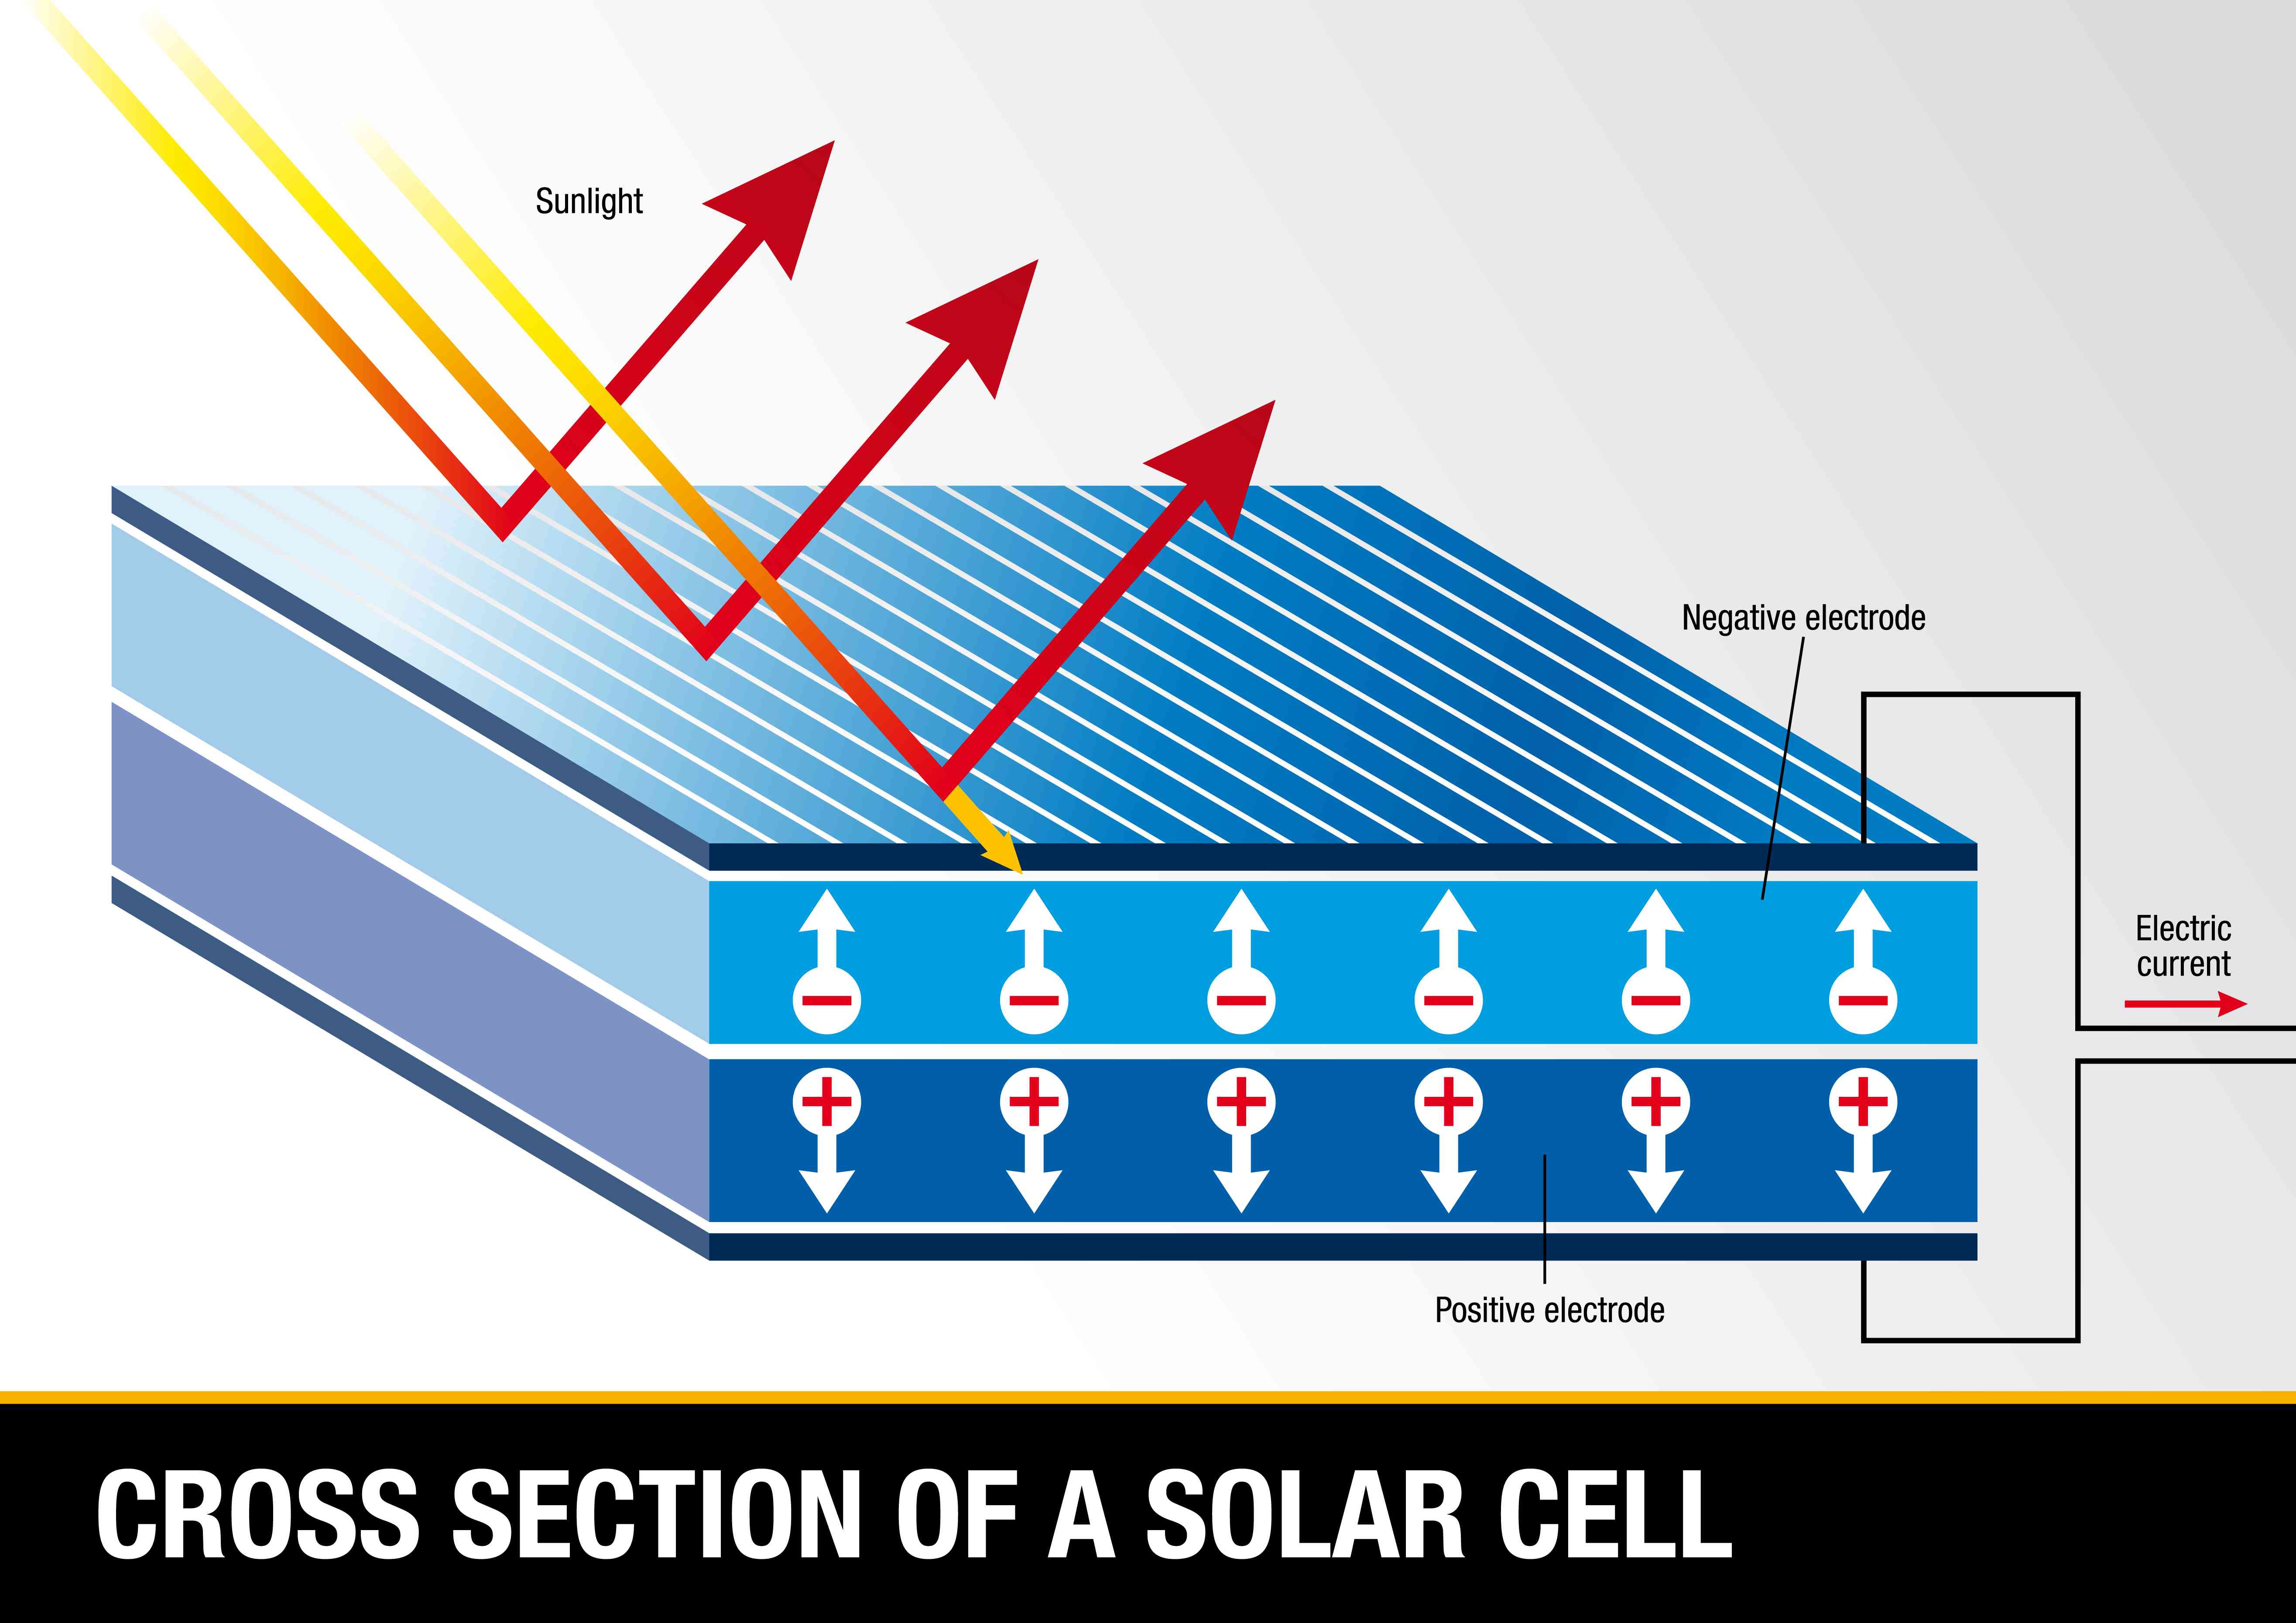 显示黄色和红色箭头表示阳光的太阳能电池的横截面图击中了细胞的顶部。有些被吸收，有些被反射。该层还示出了由圆圈表示的电子的运动，其中负符号和箭头指向的和由圆形表示的电子孔，其中指向正标志和箭头。一个电路通过显示电流的电流流出的箭头连接负极和正侧。“width=